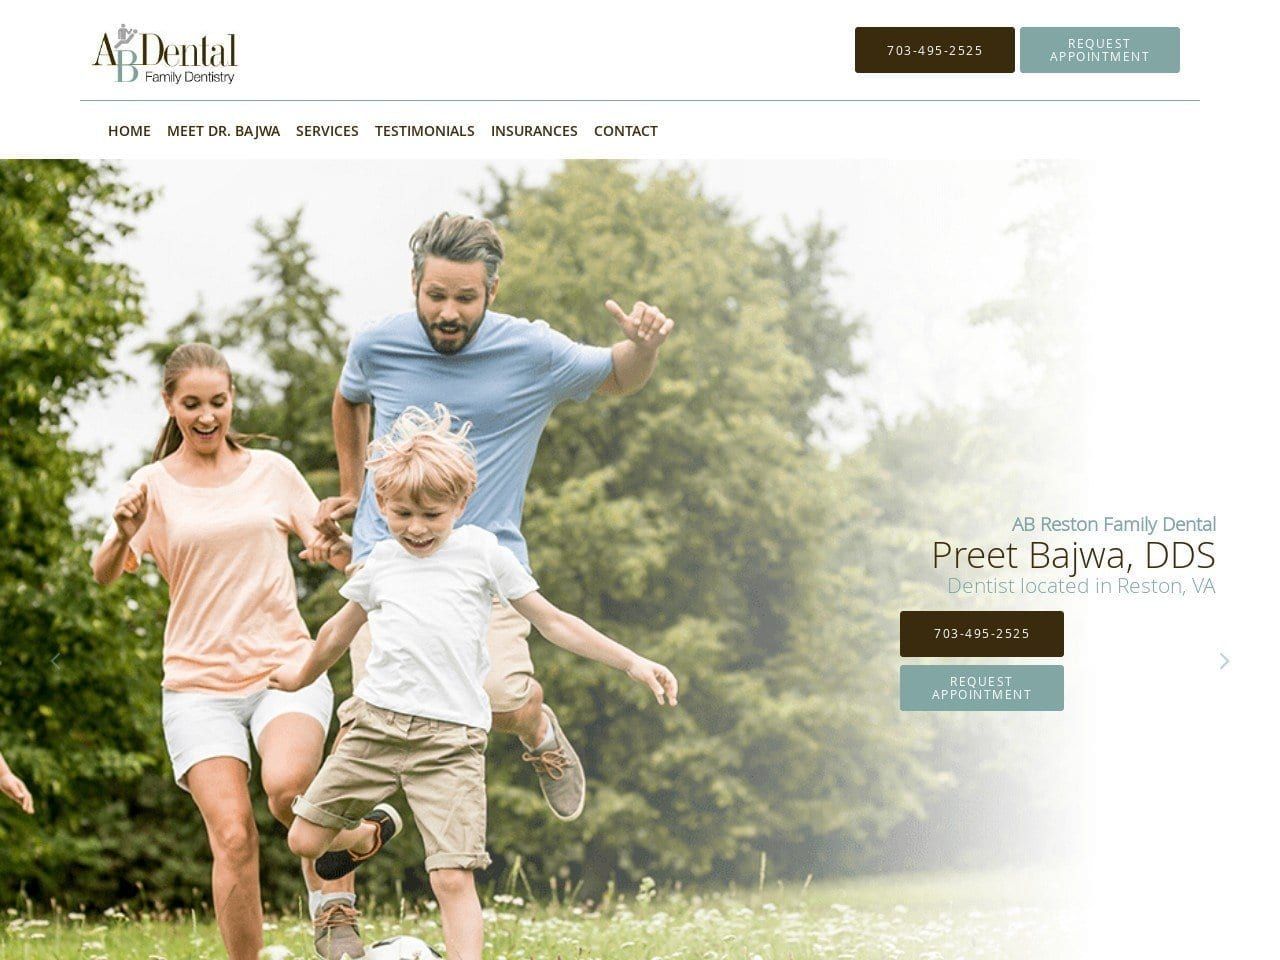 Reston Family Dental Website Screenshot from restonfamilydental.com